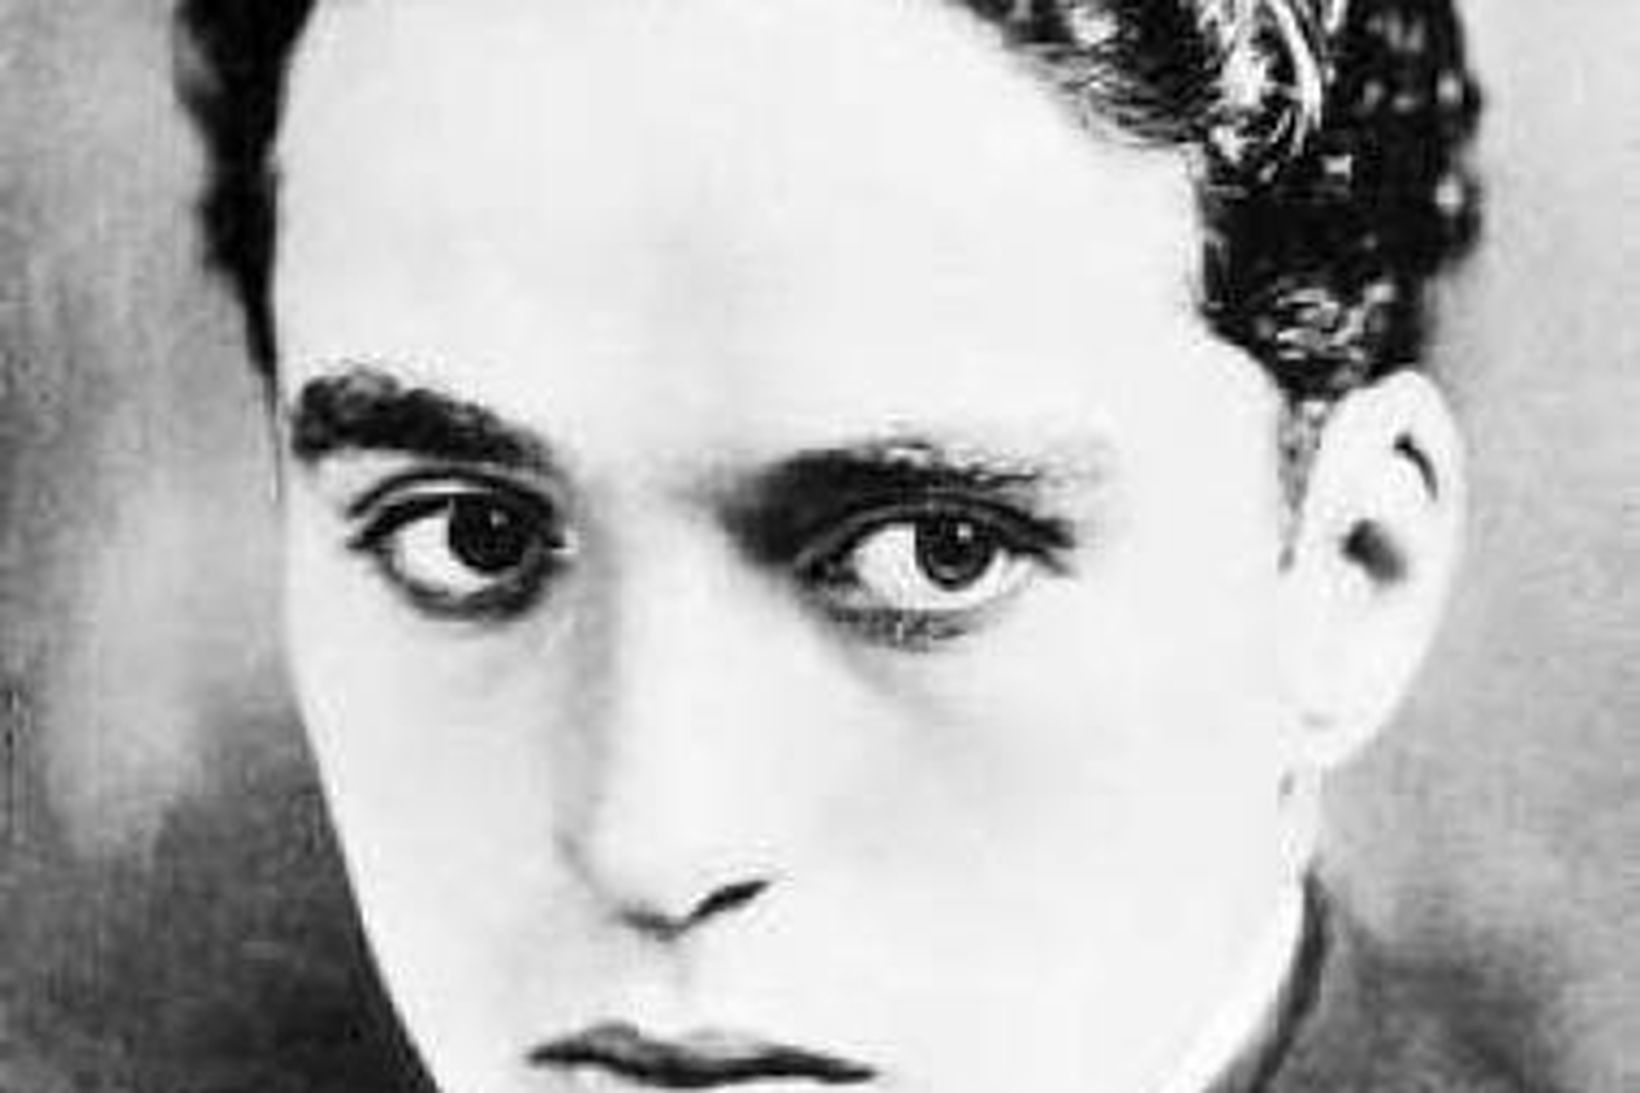 Mynd af Chaplin frá 1914.